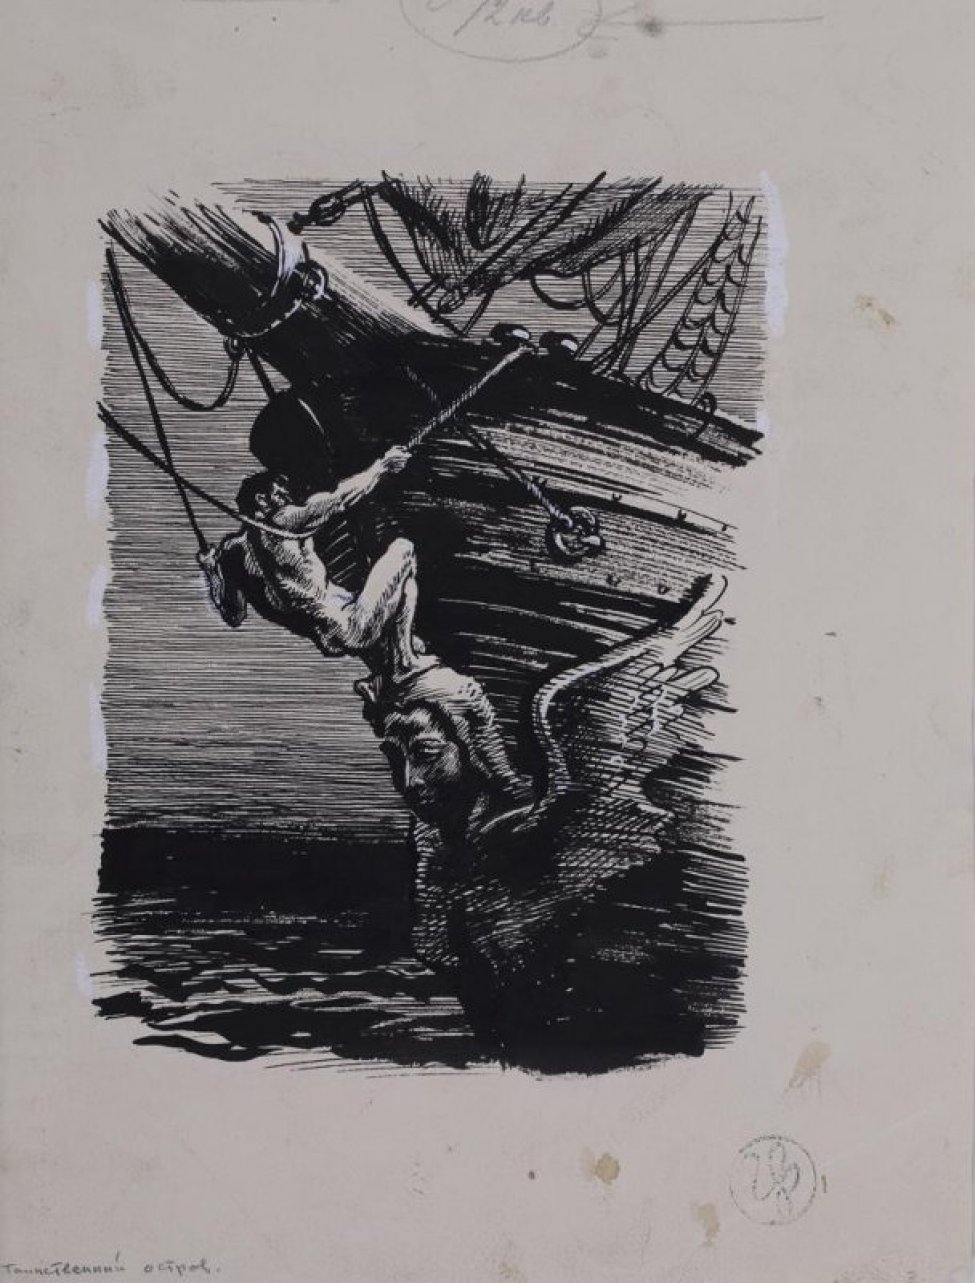 Изображена носовая часть парусного судна, украшенного скульптурой в виде женской головы и крыльев. На скульптуре - фигура мужчины, держащегося за канатные веревки.